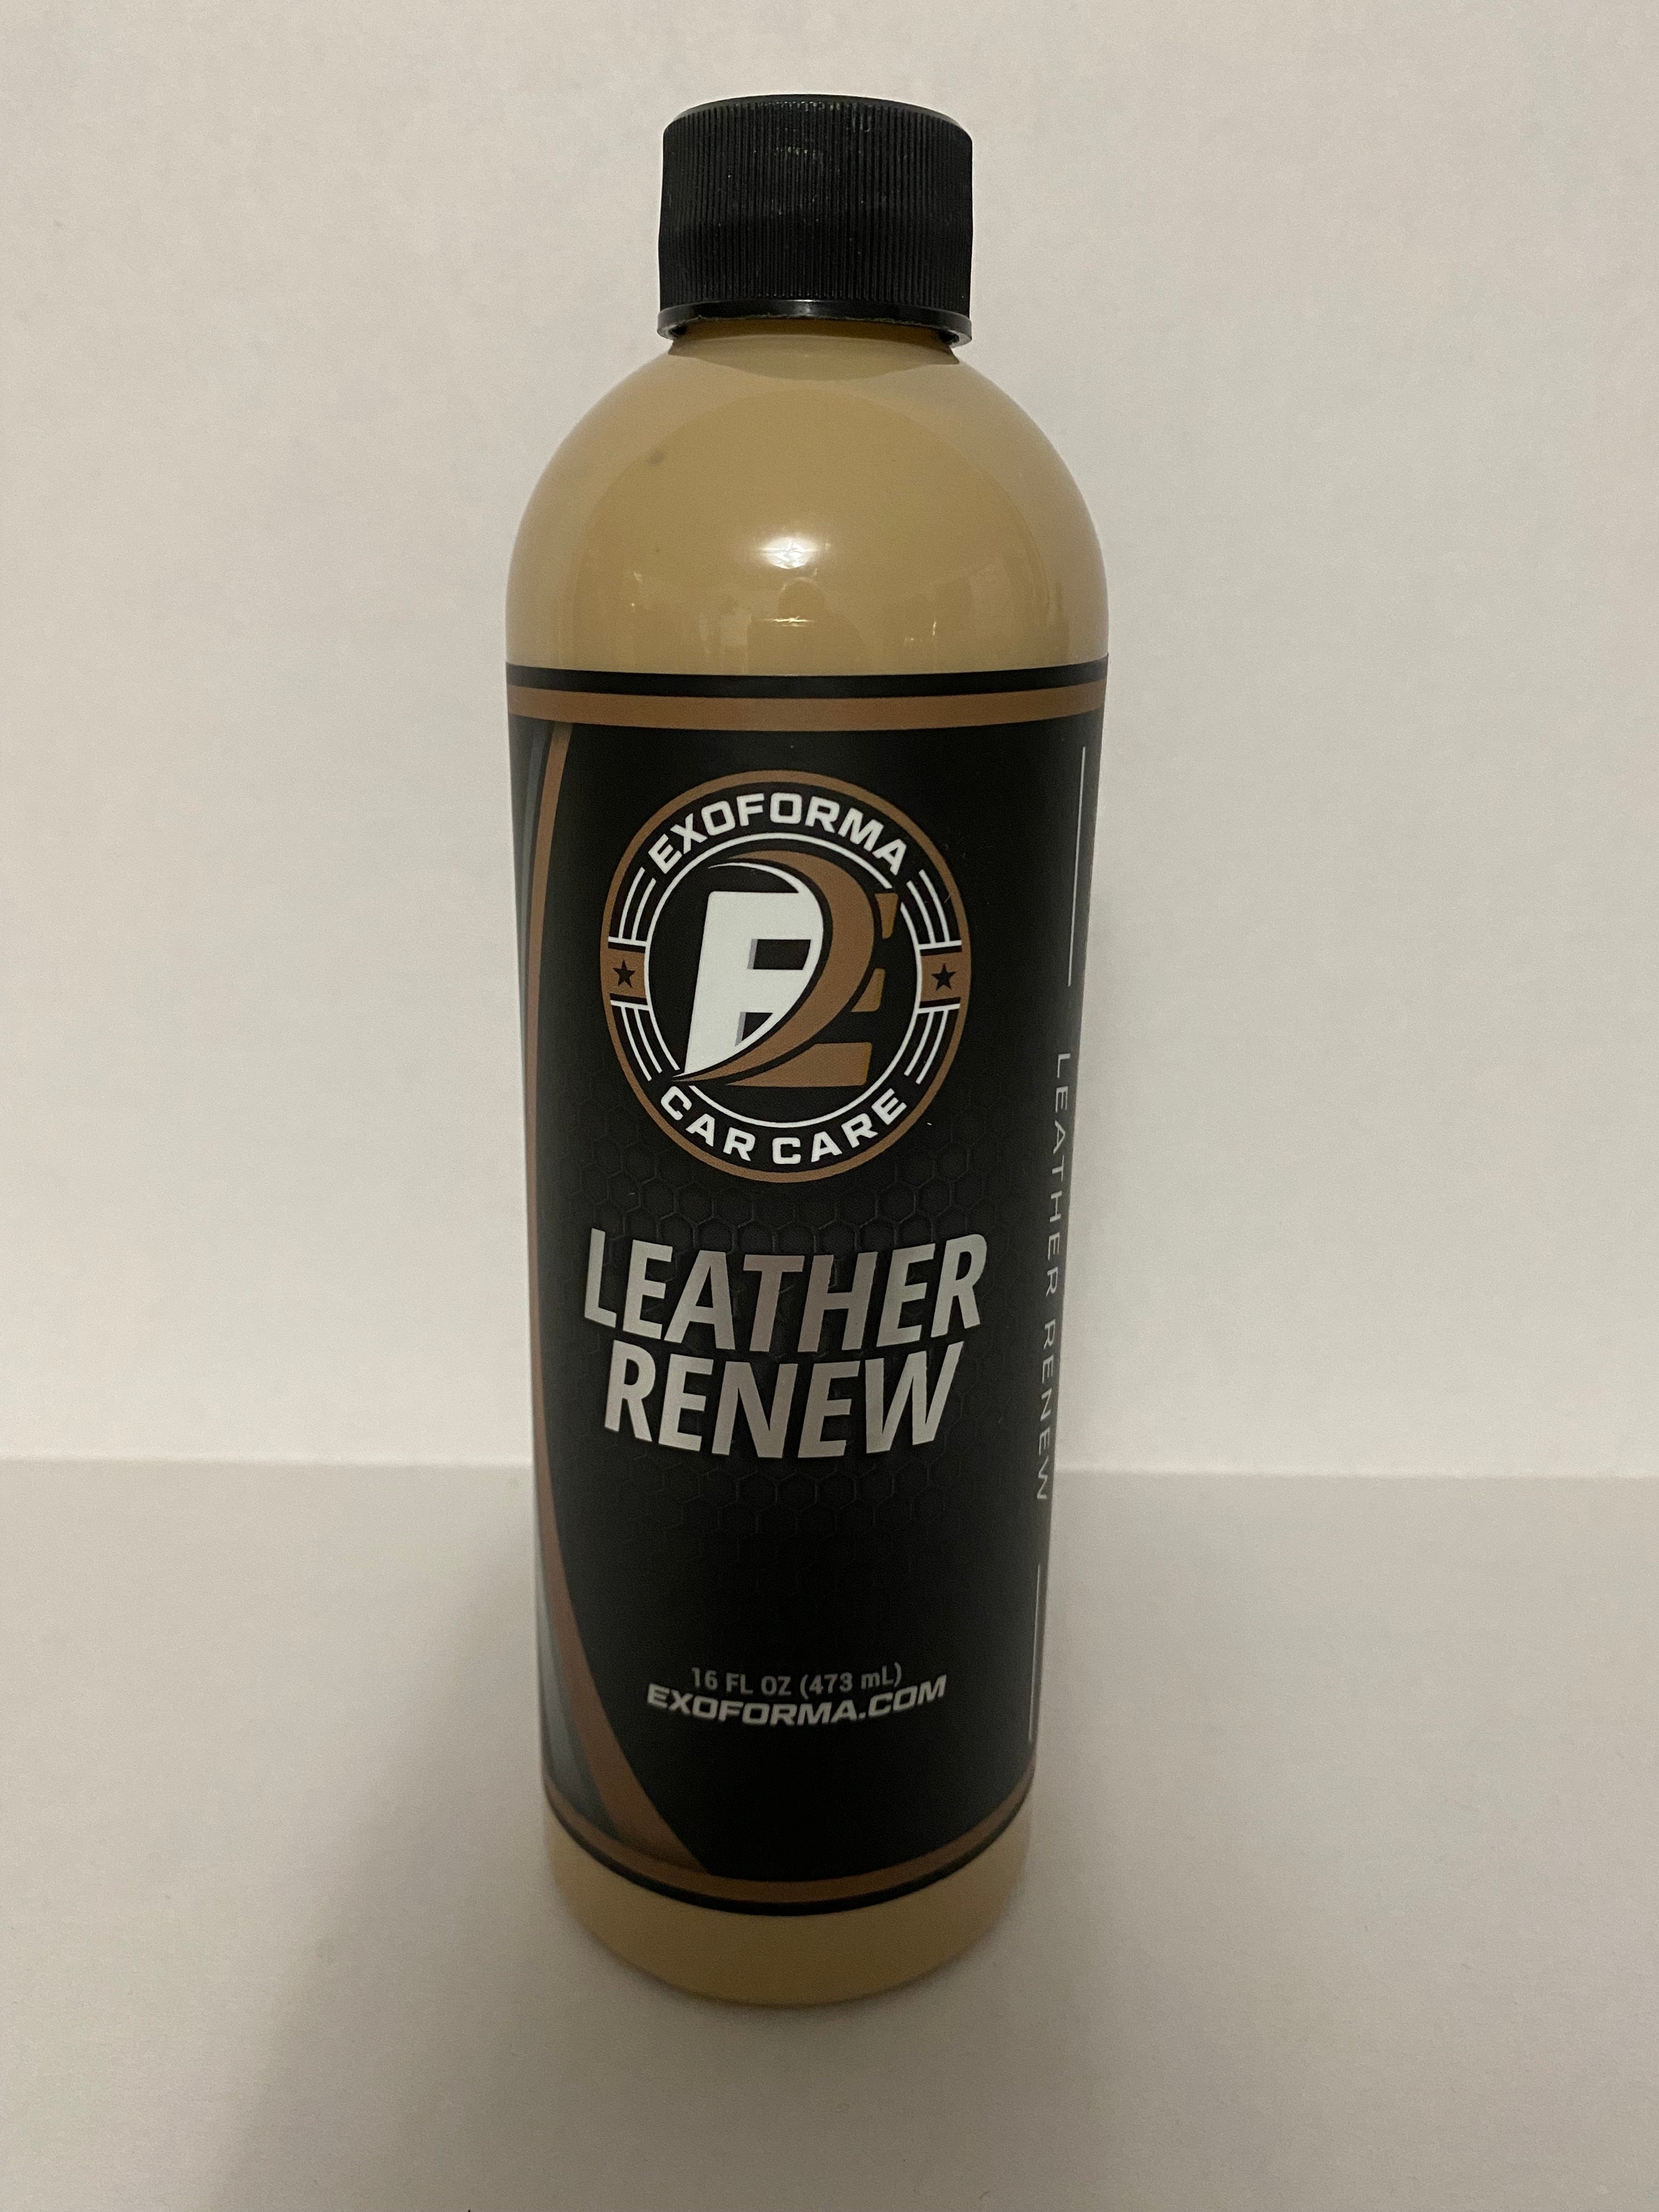 Exoforma Leather Conditioner